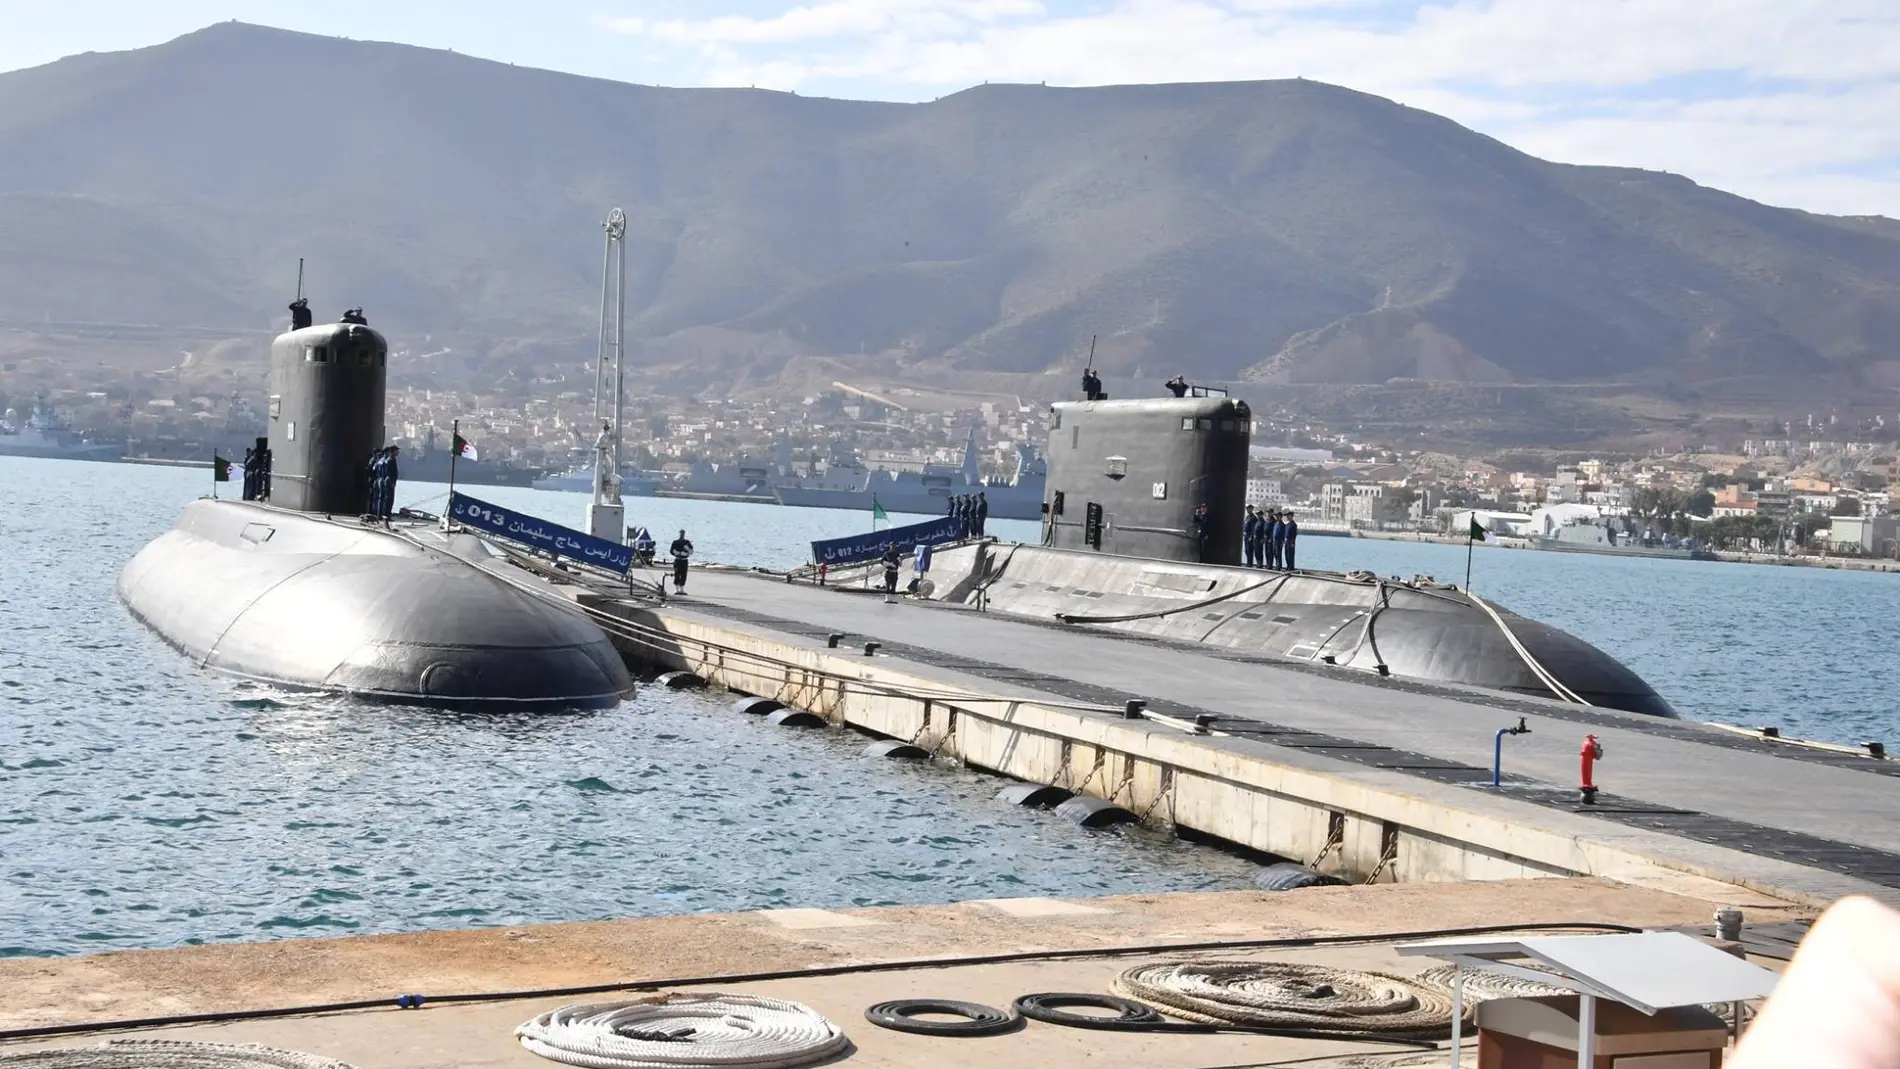 Submarinos de la clase Kilo de la Marina argelina en Mers el-Kébir (Oran). El Hadj Slimane (013), Rais Hadj Mubarek (012).